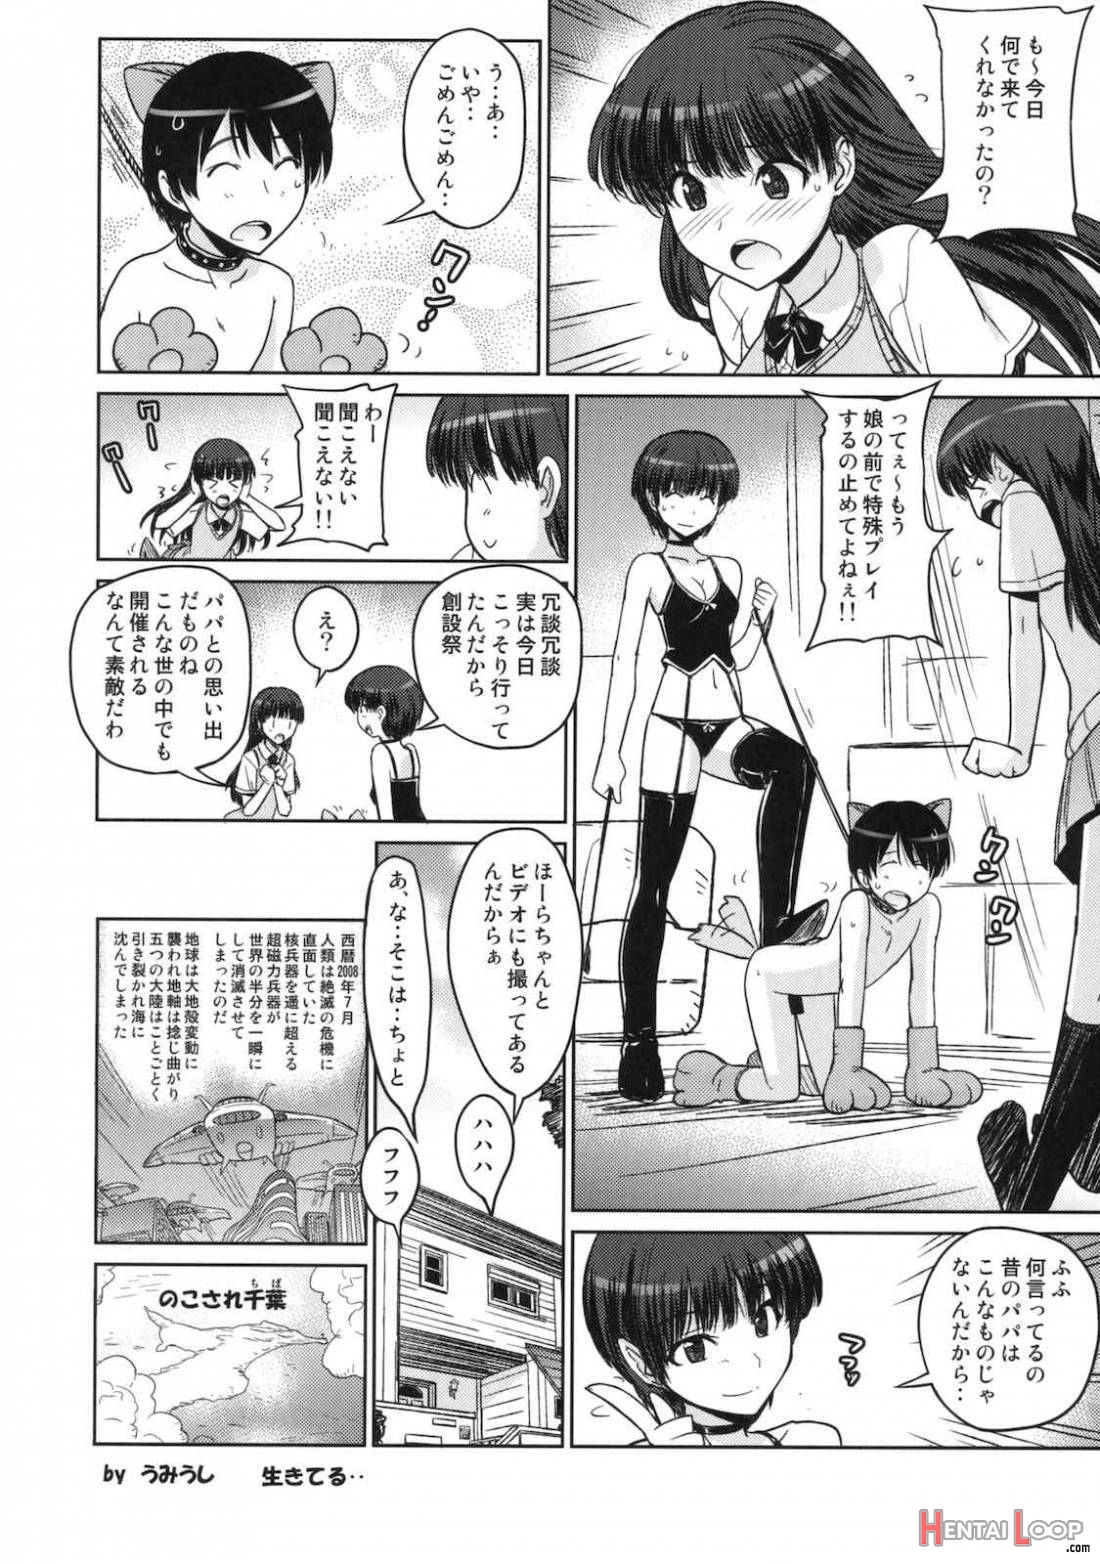 Anata wo Ijimeru 100 no Houhou 2 page 15